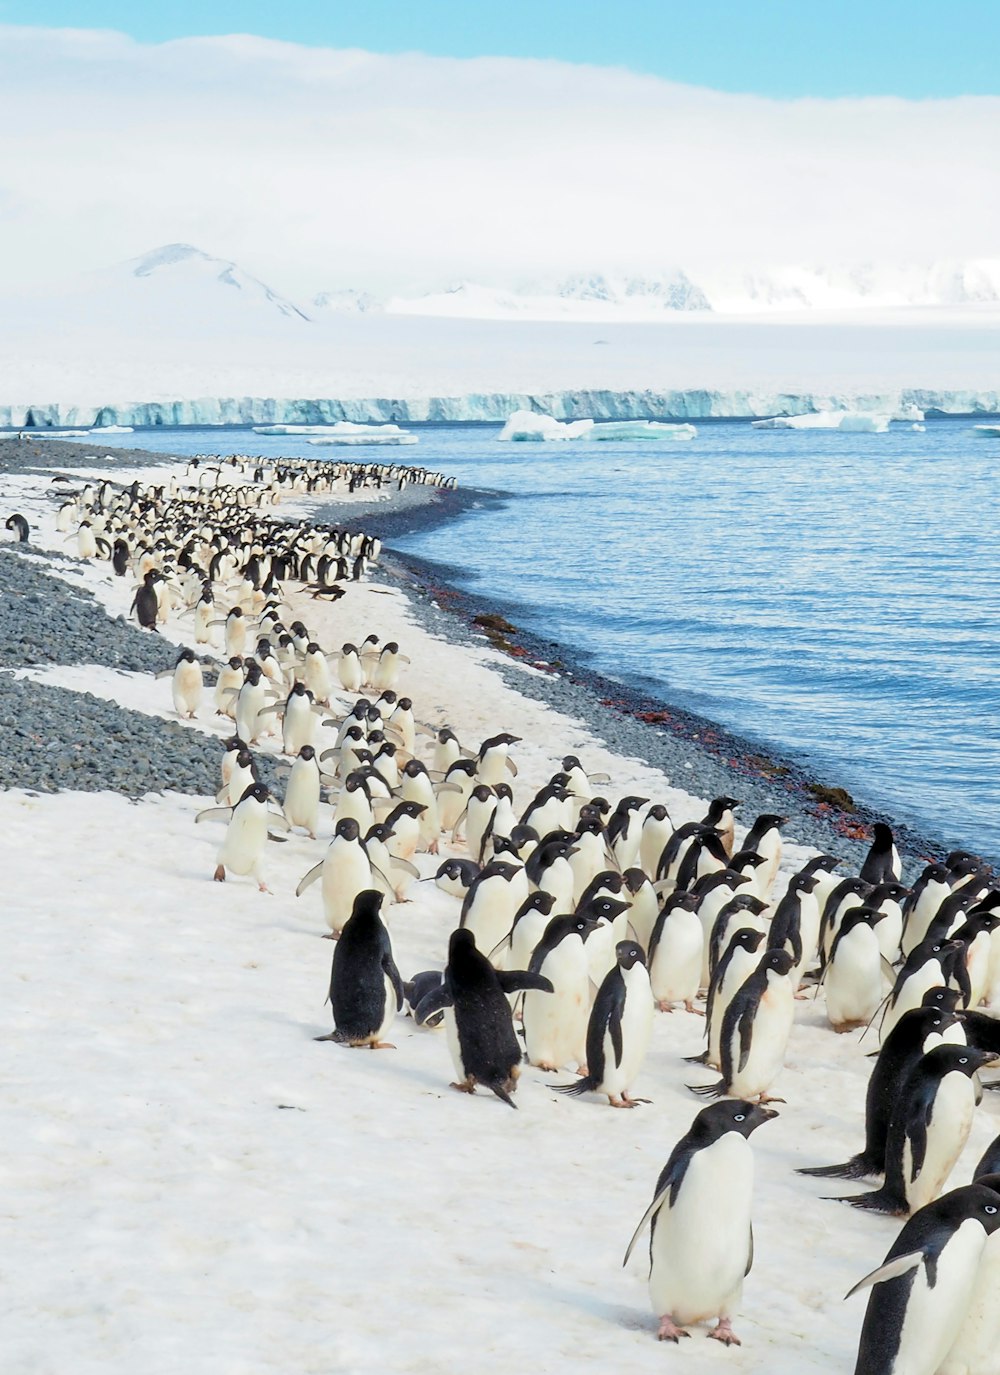 pingouins sur la plage de sable blanc pendant la journée